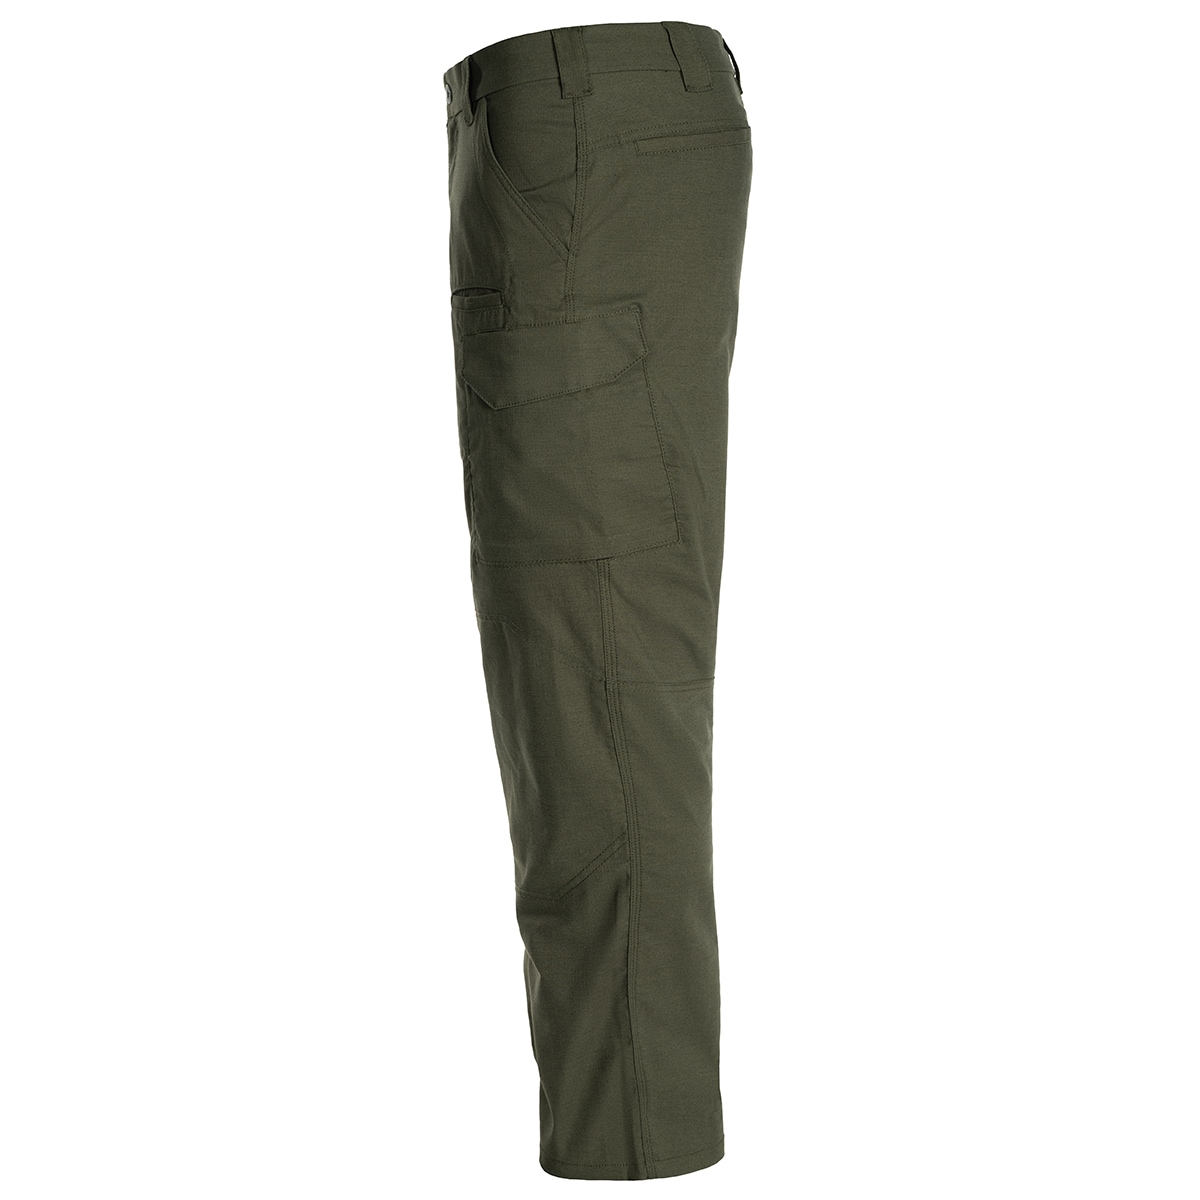 Spodnie First Tactical V2 OD Green